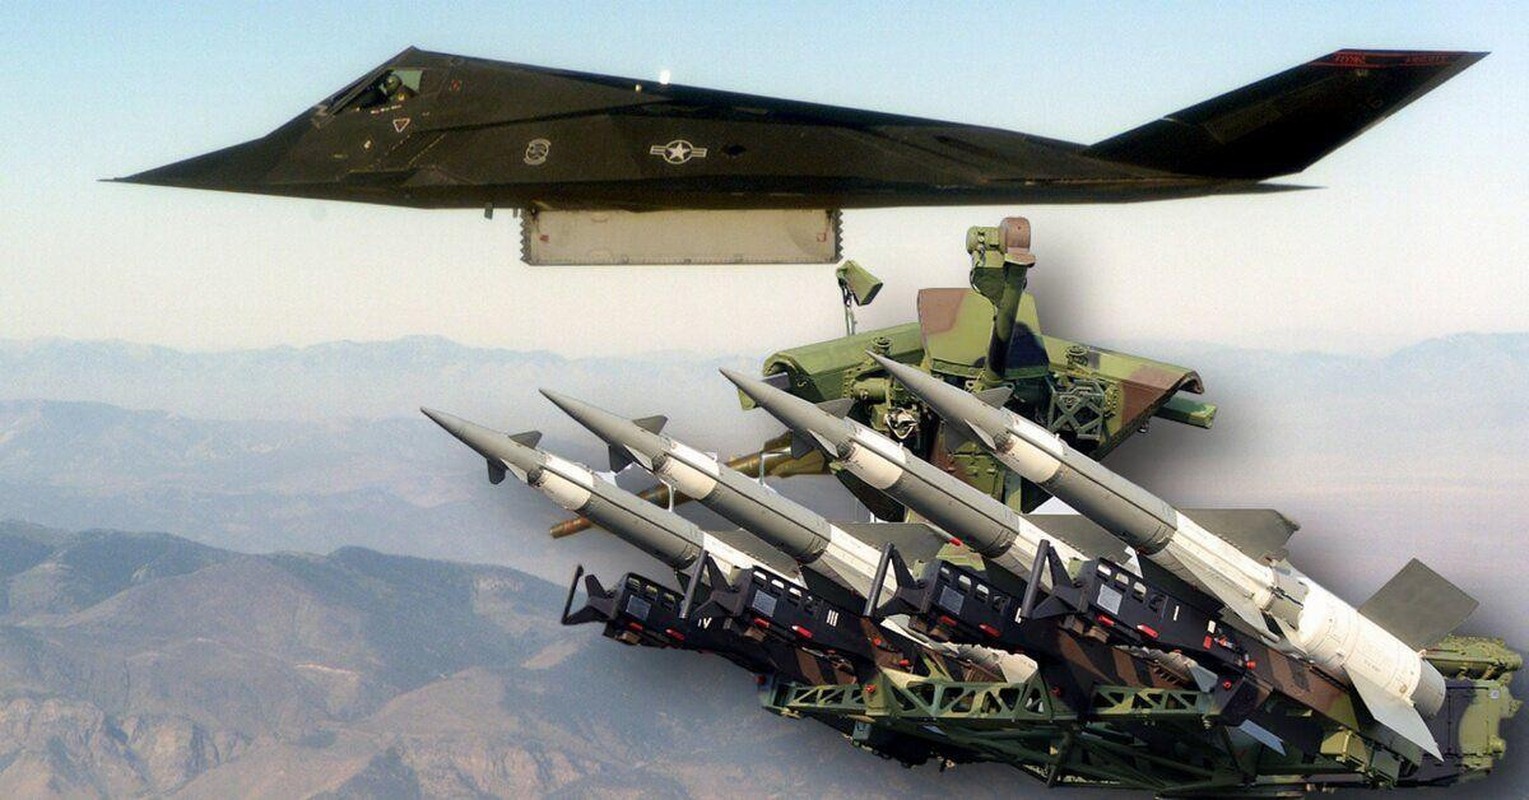 Bat ngo: Nam Tu tung ban trung hai may bay tang hinh F-117A cua My